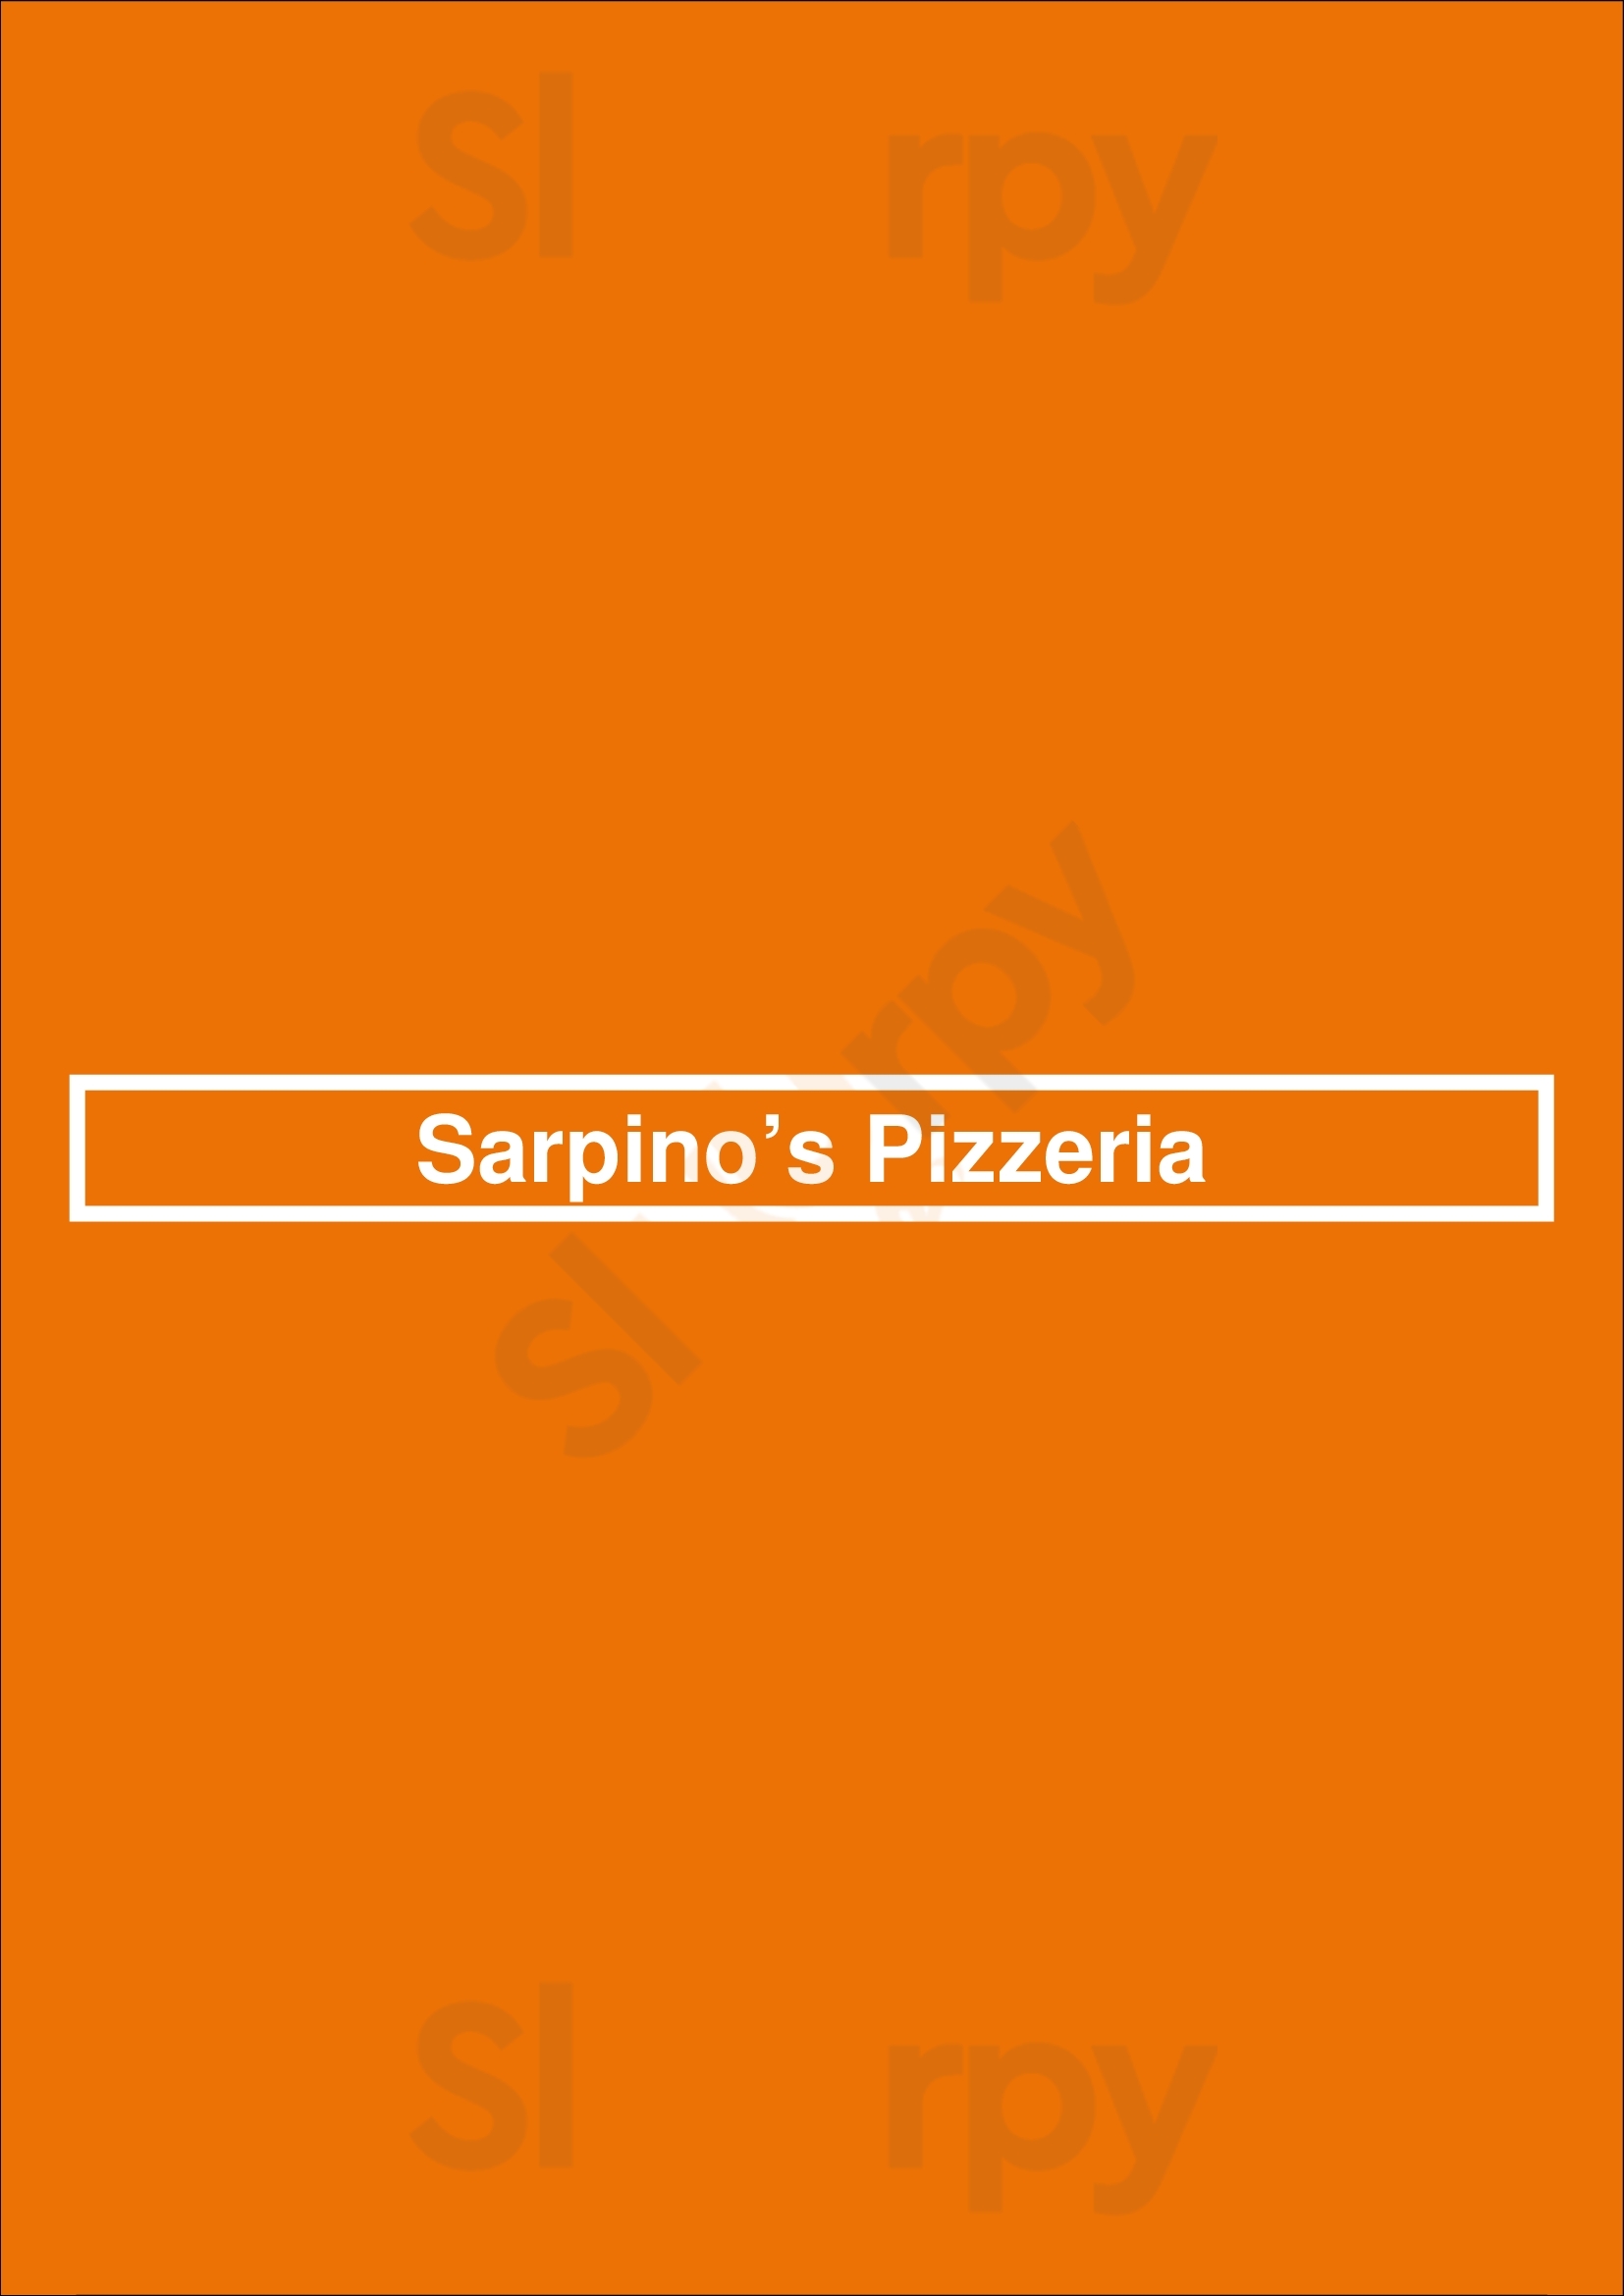 Sarpino’s Pizzeria Chicago Menu - 1